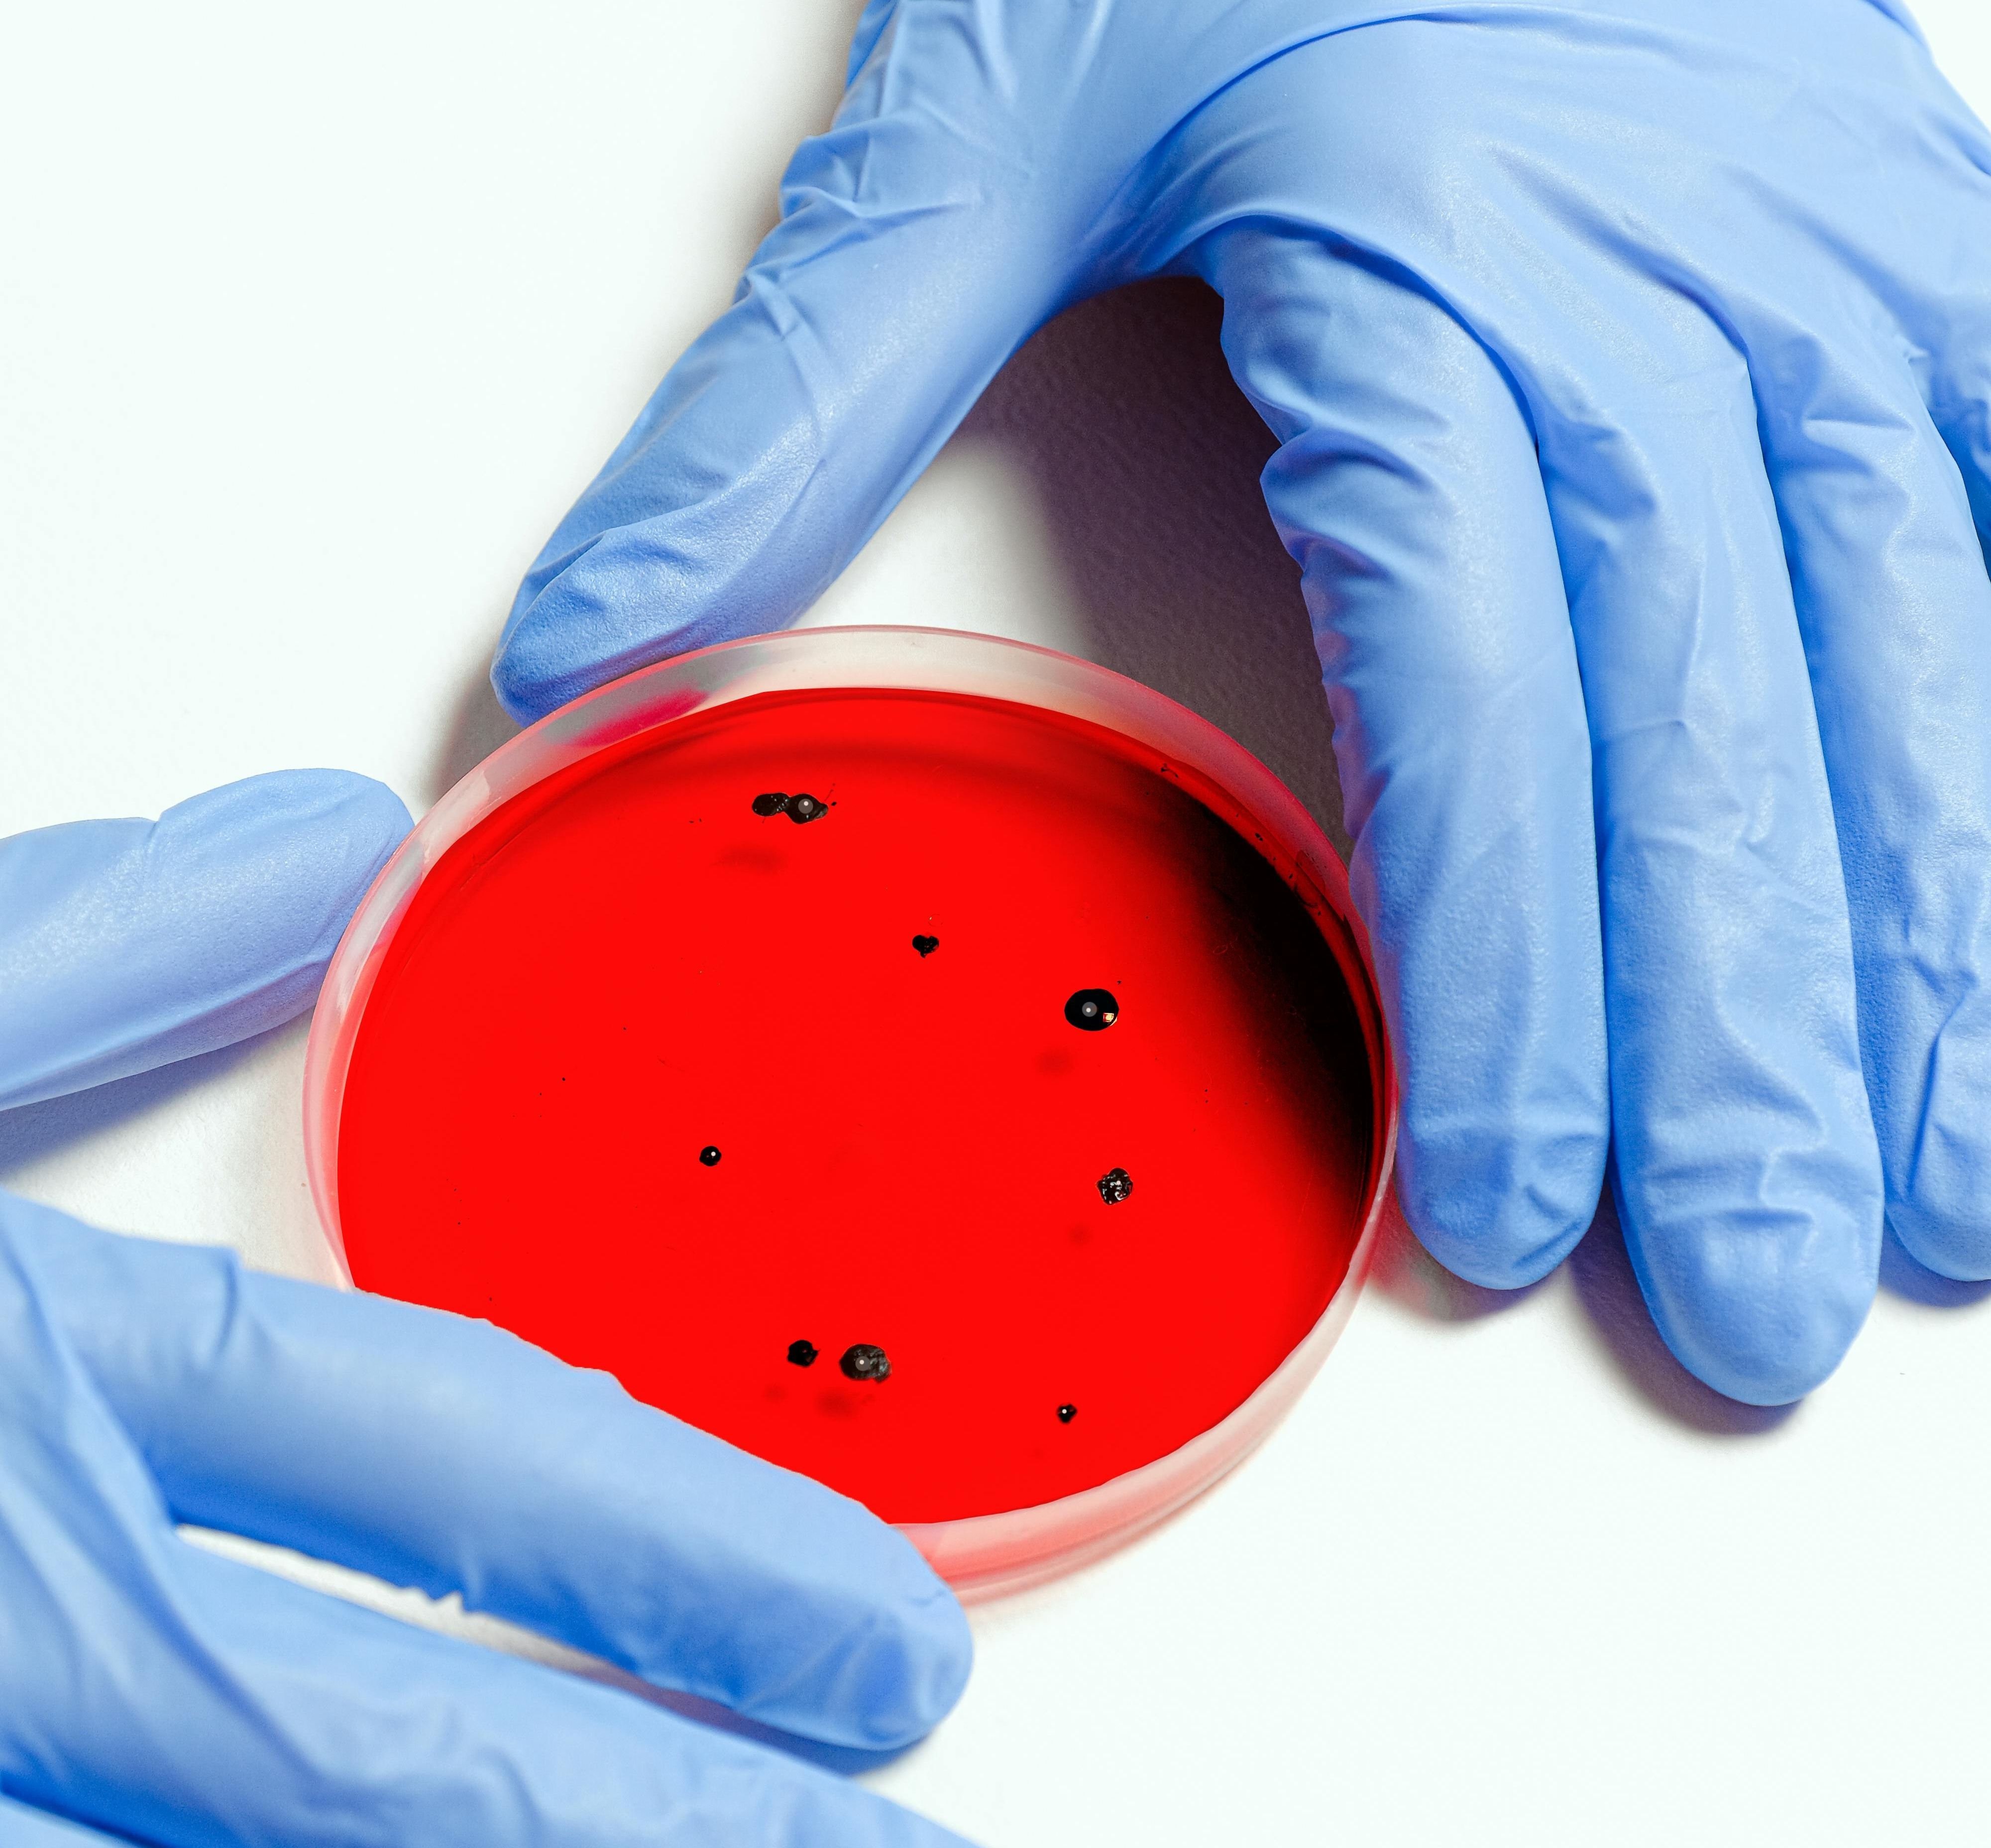 Startup tedesca cerca spazio di laboratorio per espandere la loro ricerca sugli antibiotici a base di batteriofagi